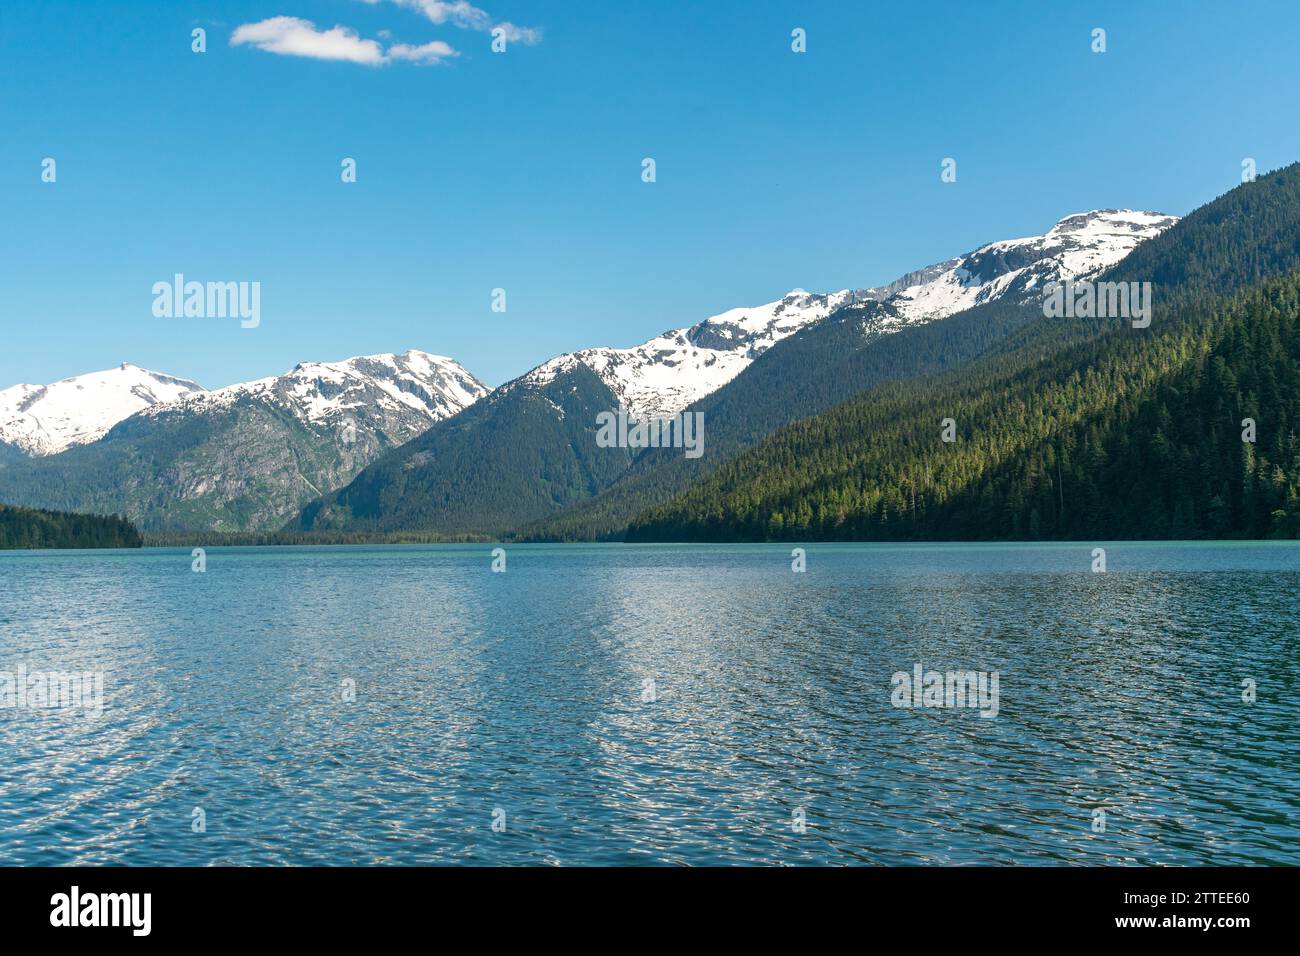 La tranquilla distesa del lago Cheakamus rispecchia le montagne innevate circostanti sotto gli ampi cieli blu della Columbia Britannica. Foto Stock